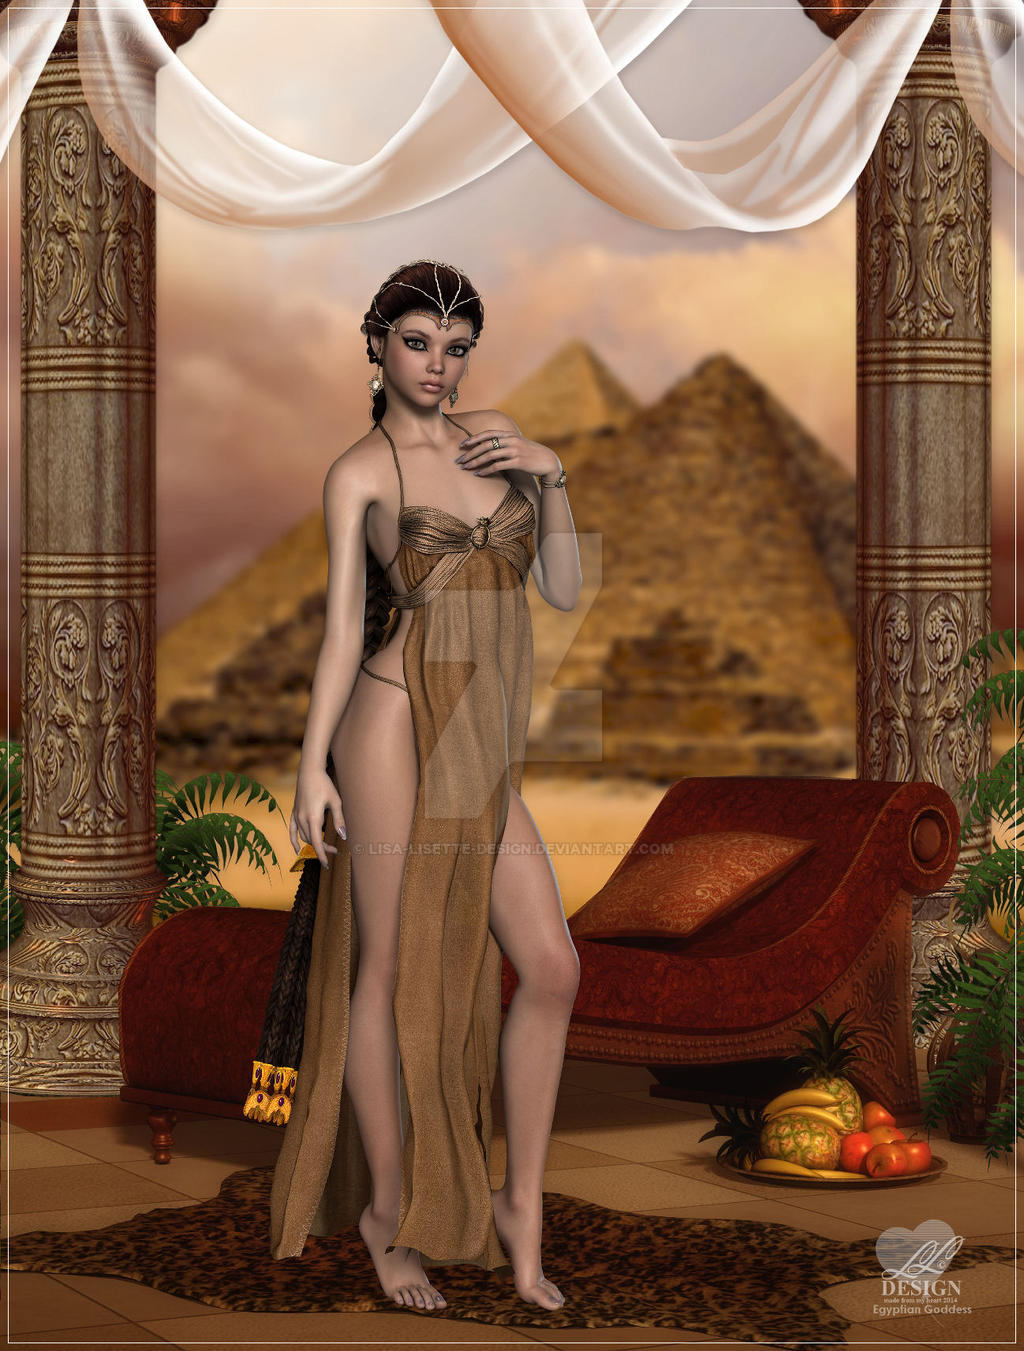 Egyptian Goddess By Lisa Lisette Design On Deviantart